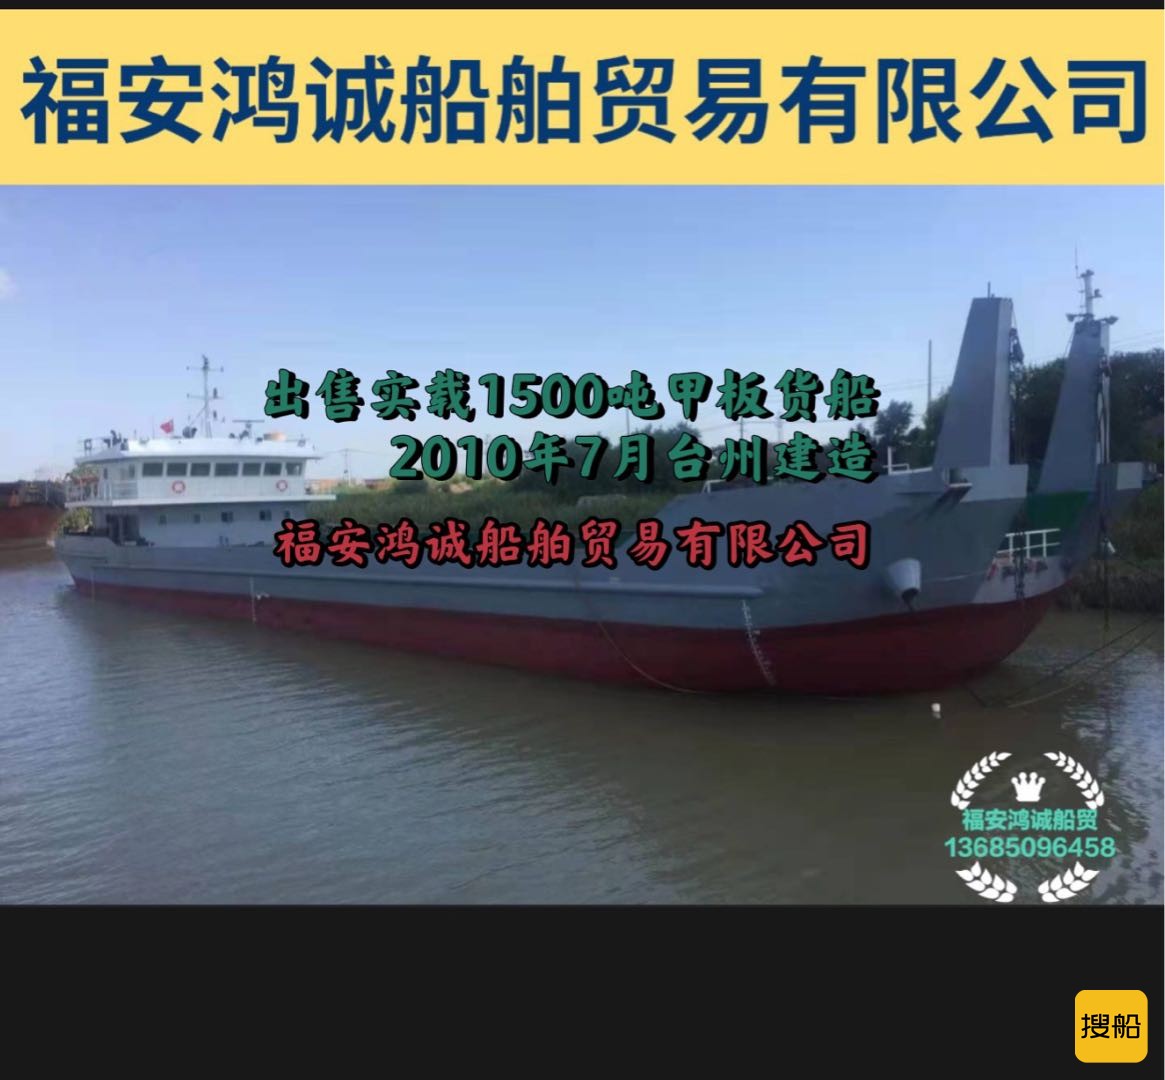 出售实载1500吨甲板货船